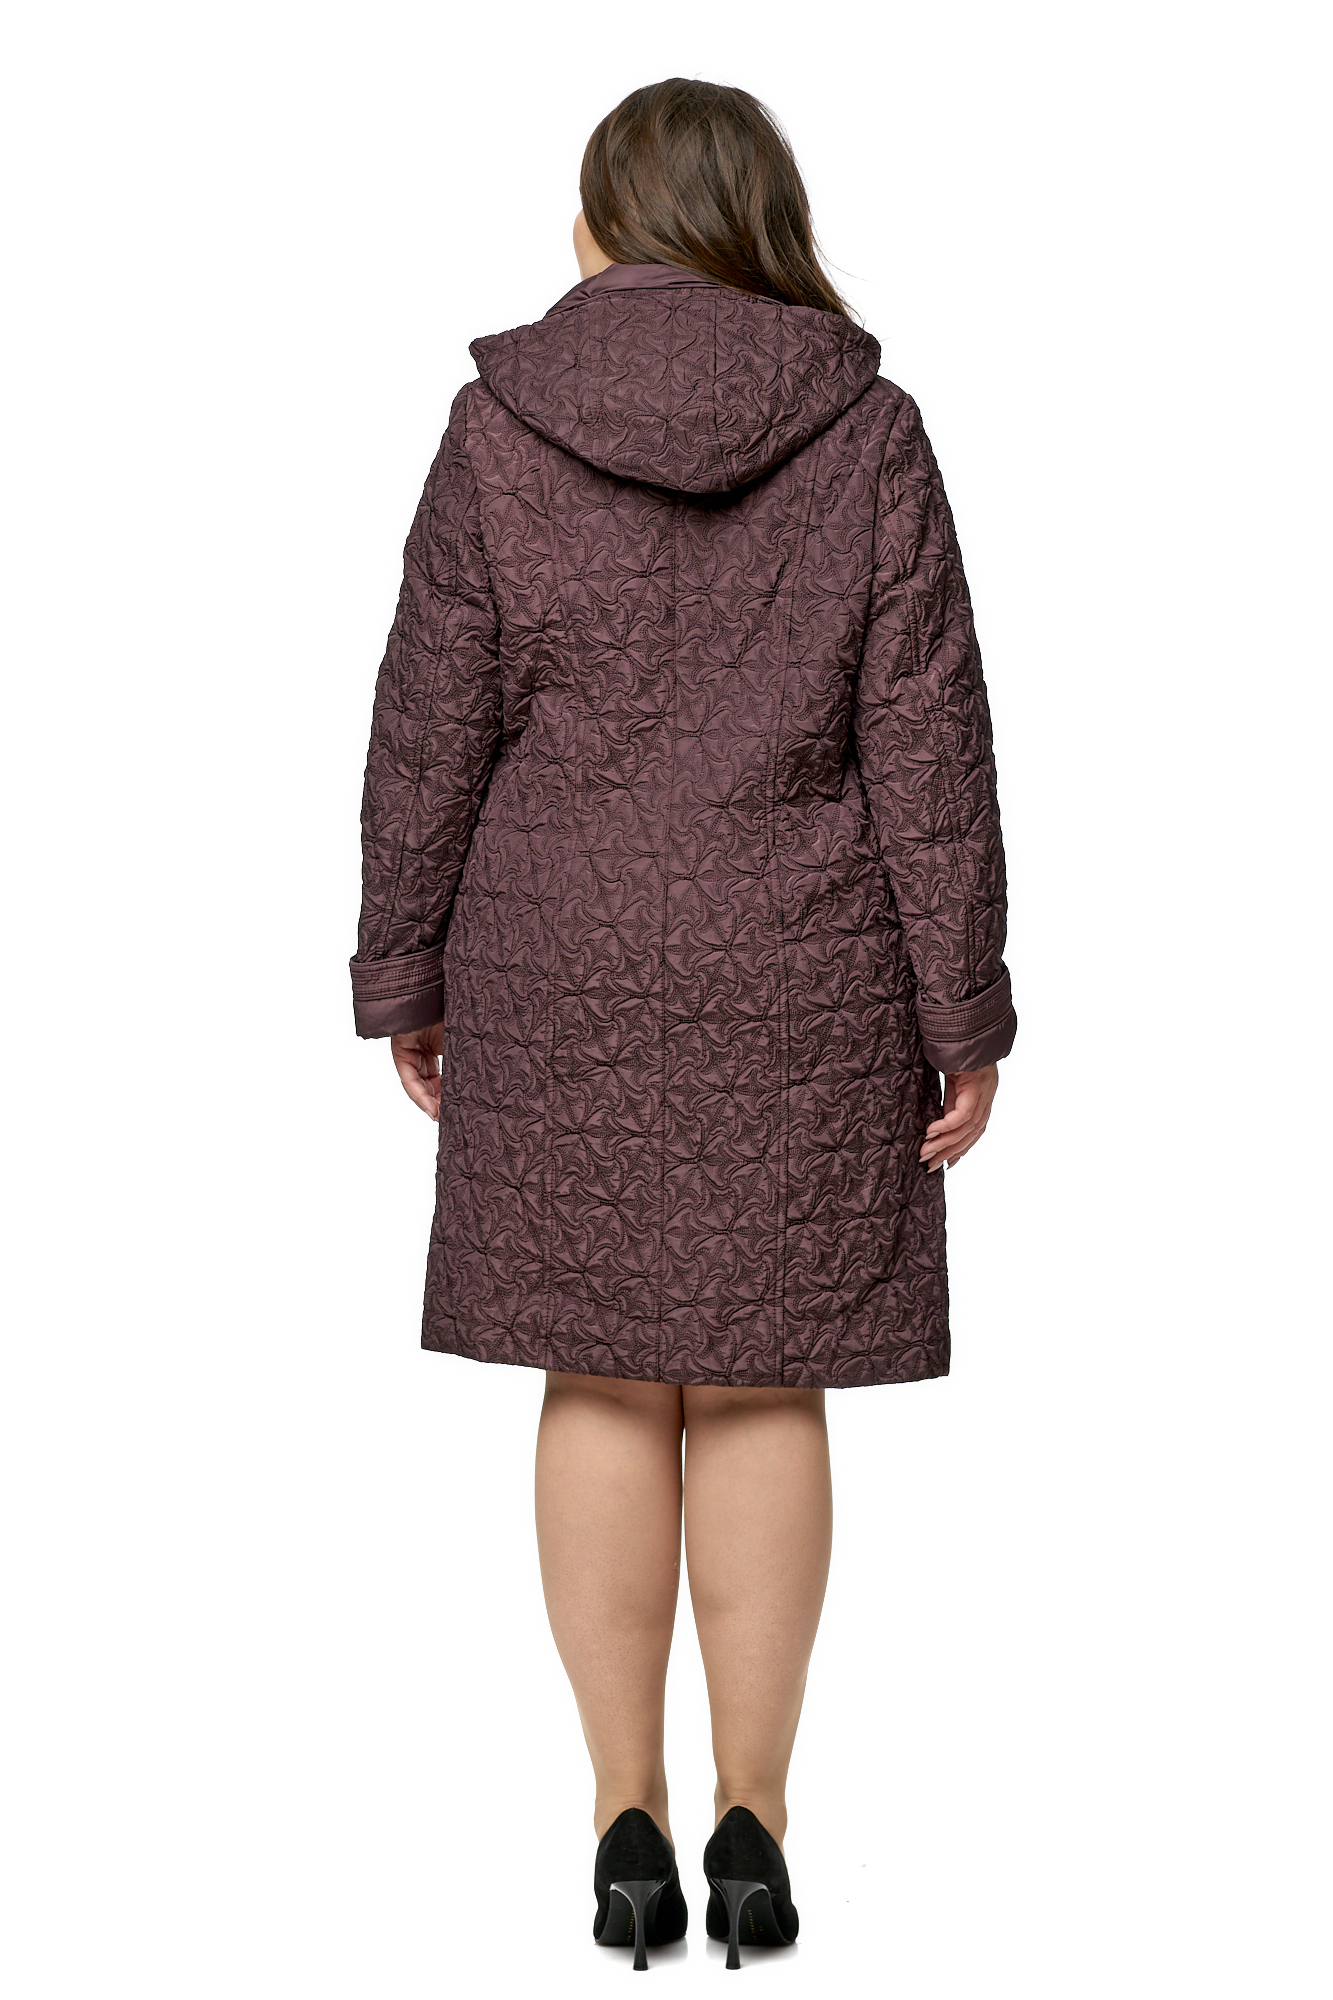 Женское пальто из текстиля с капюшоном 8010438-3